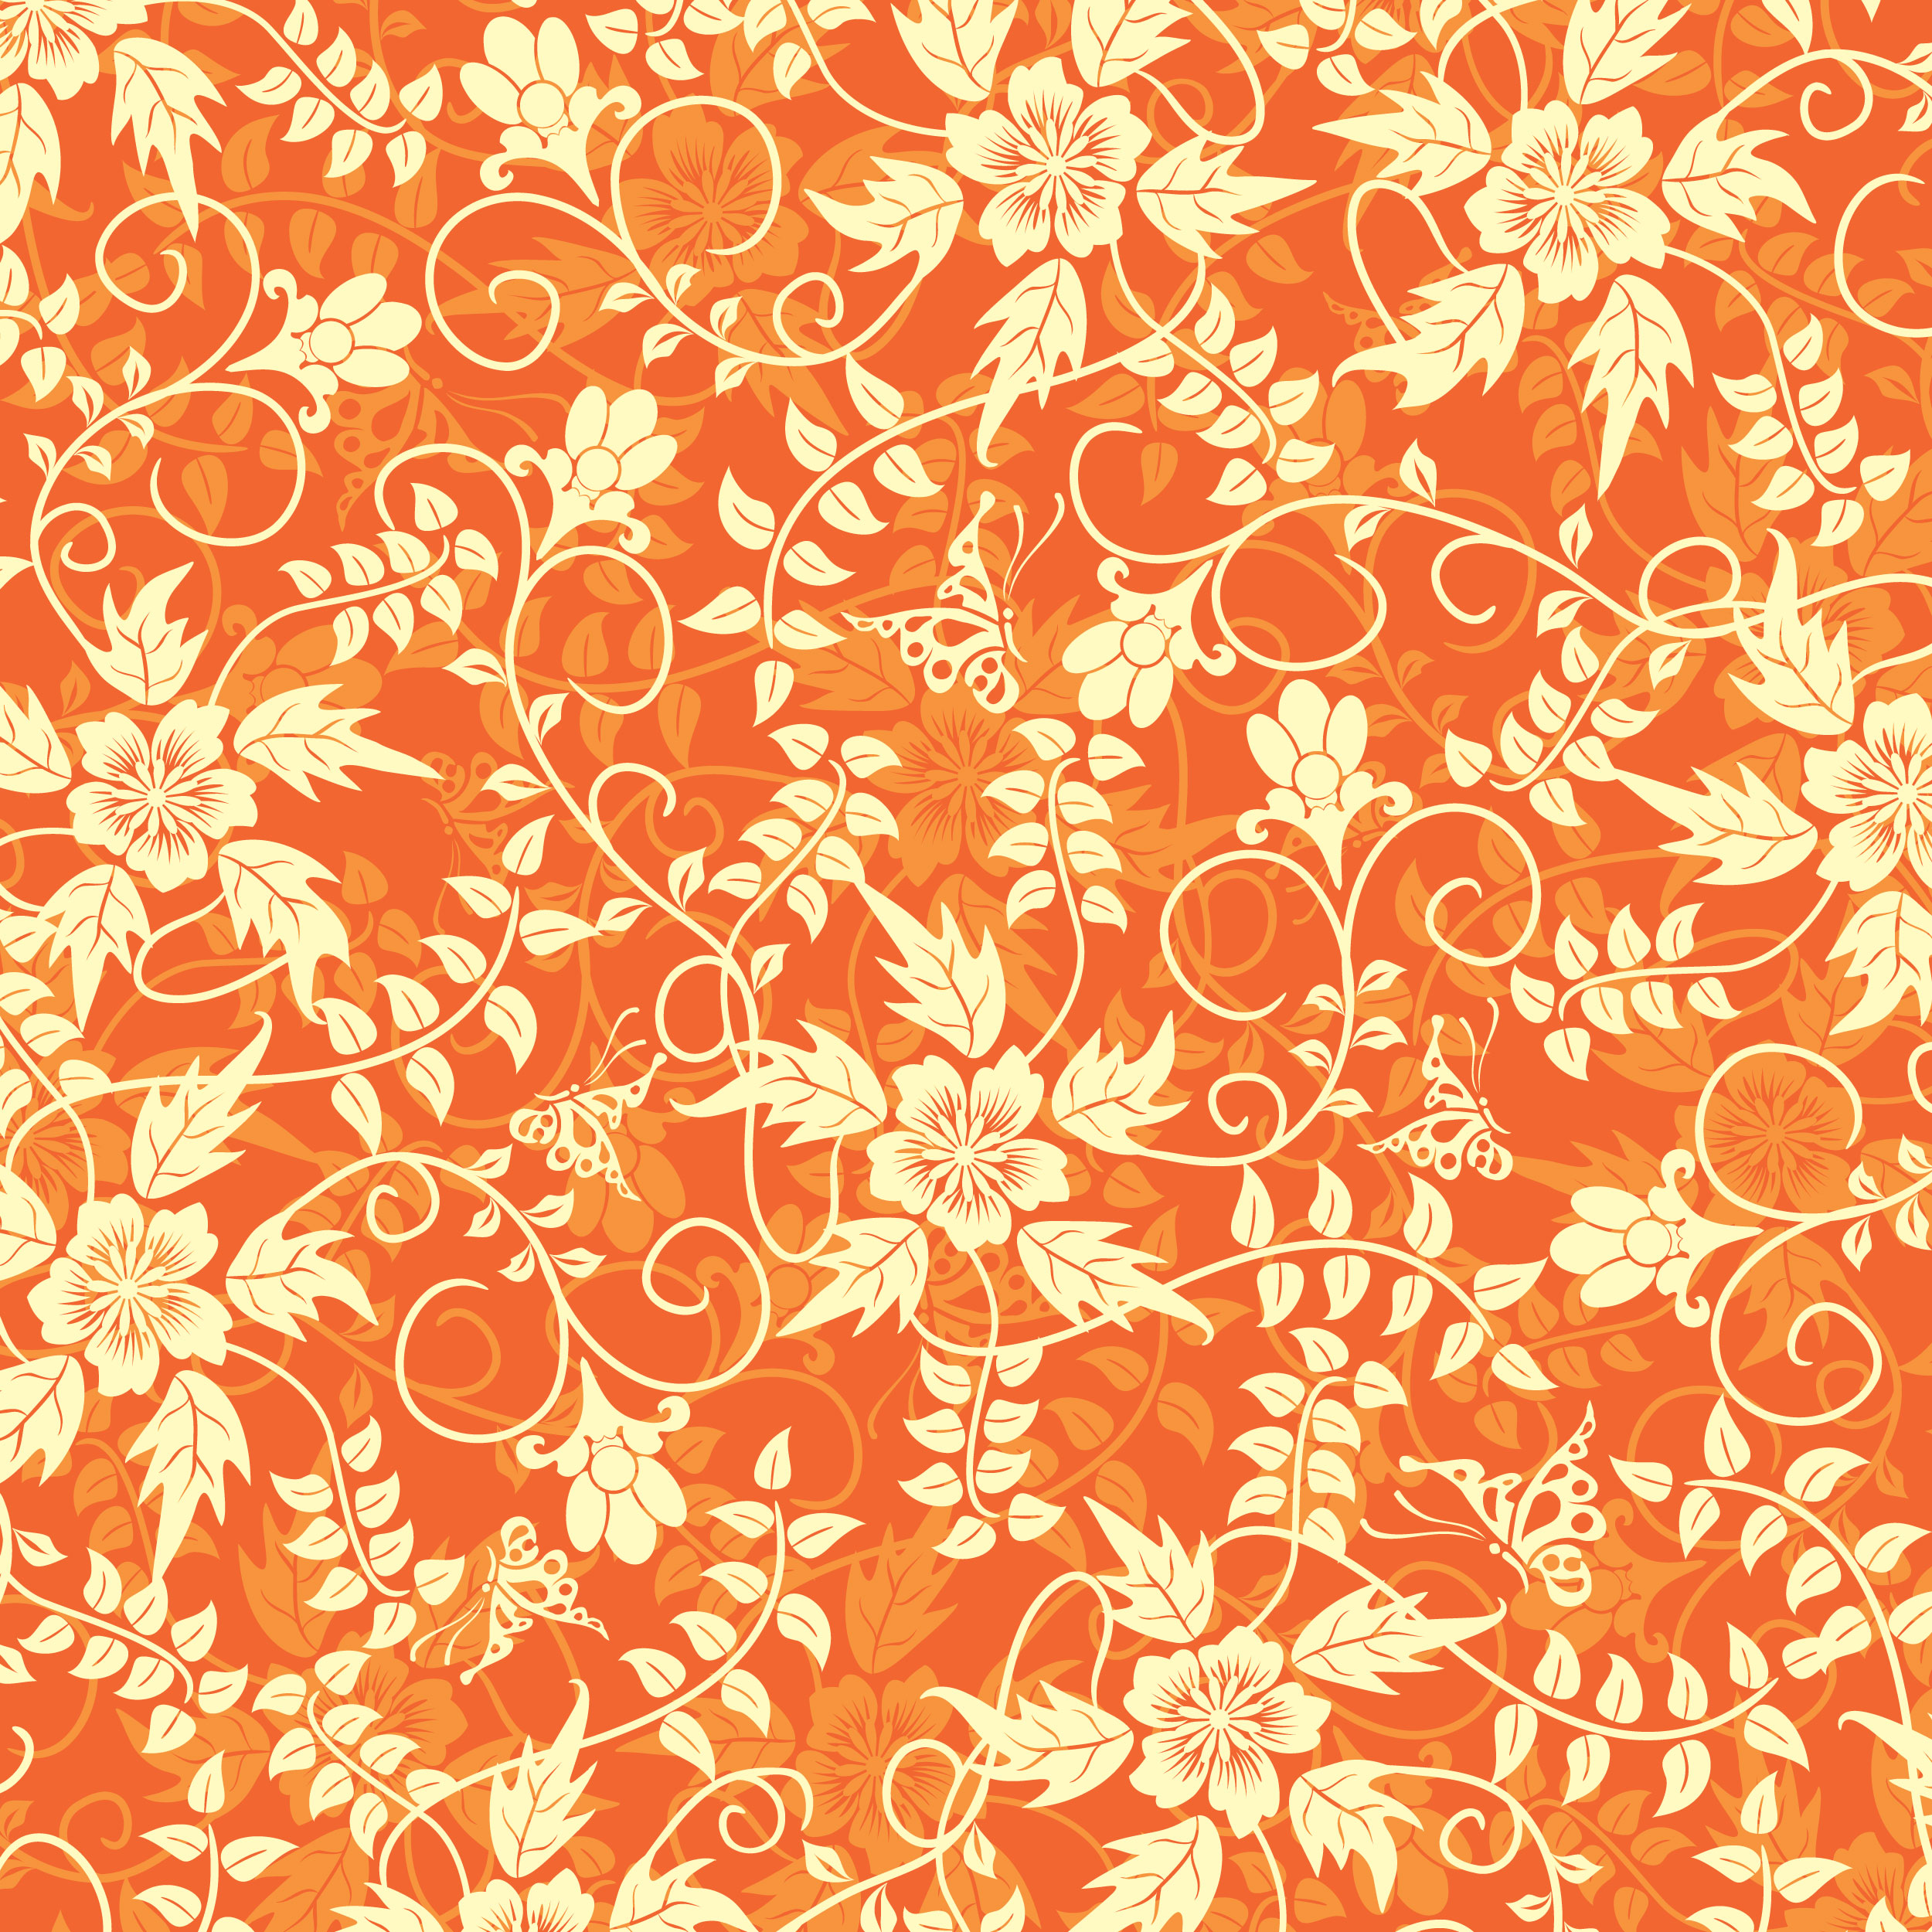 壁紙 背景イラスト 花の模様 柄 パターン No 2 オレンジ 茎葉 つる